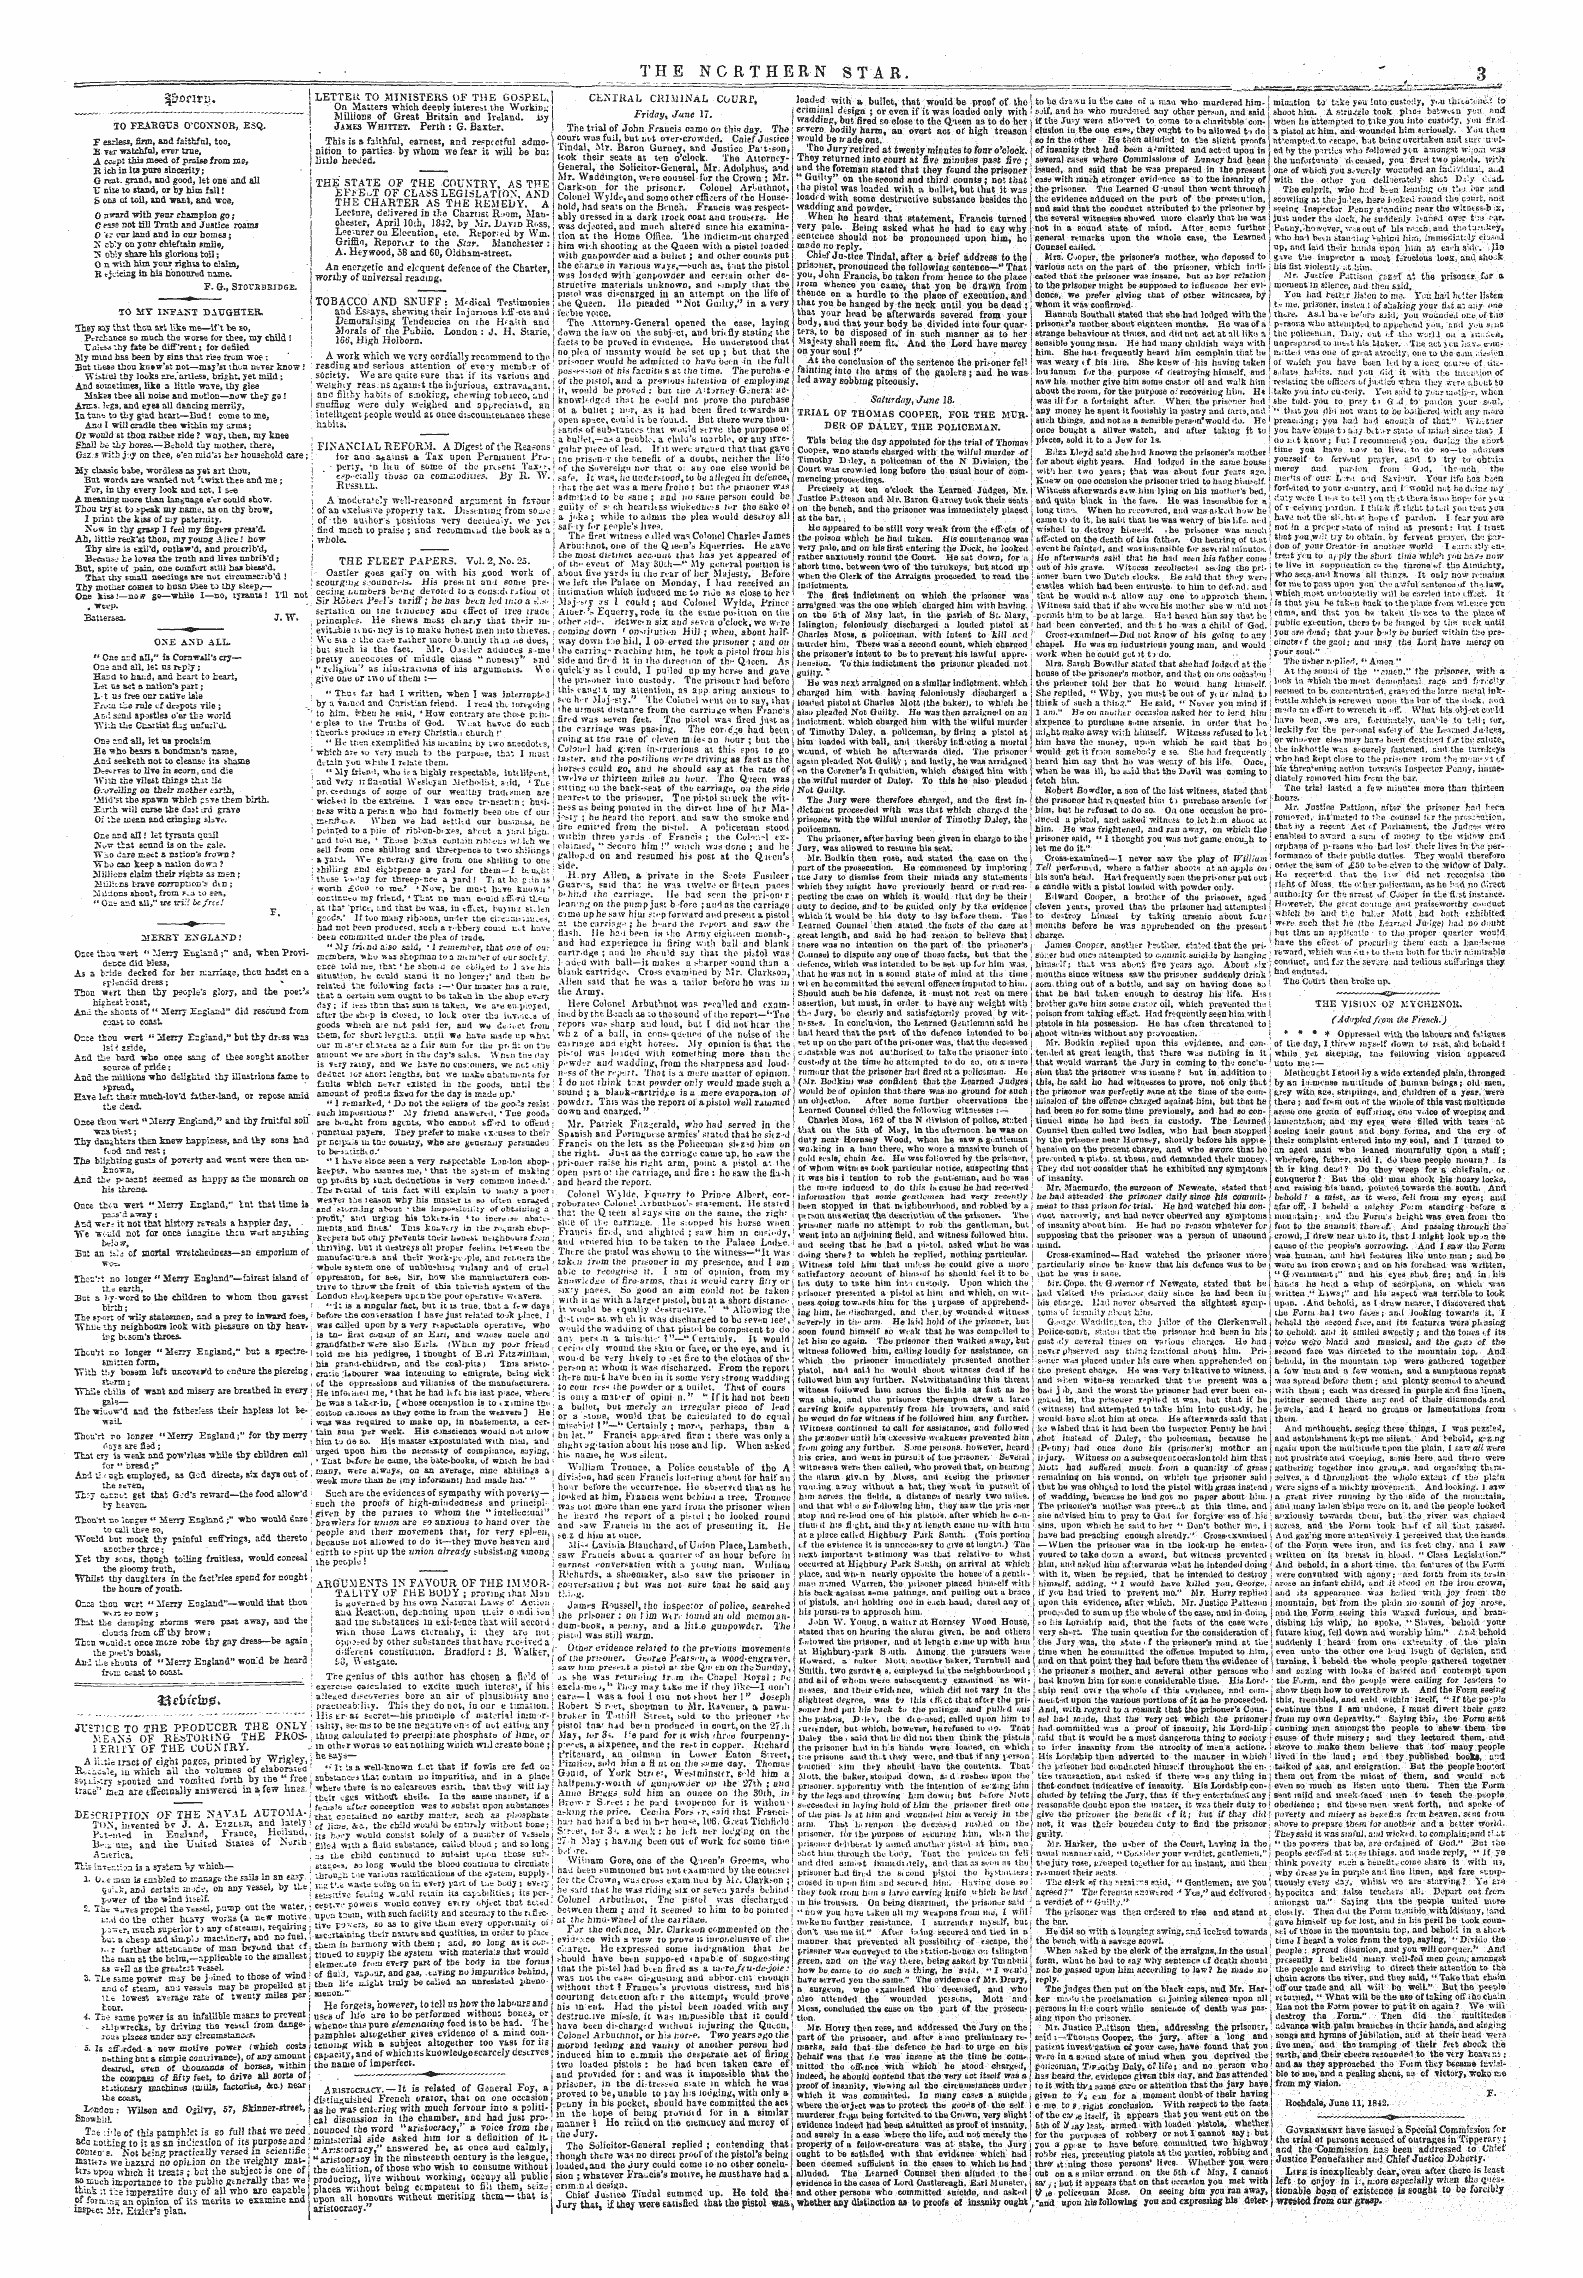 Northern Star (1837-1852): jS F Y, 4th edition - Ttocltv*